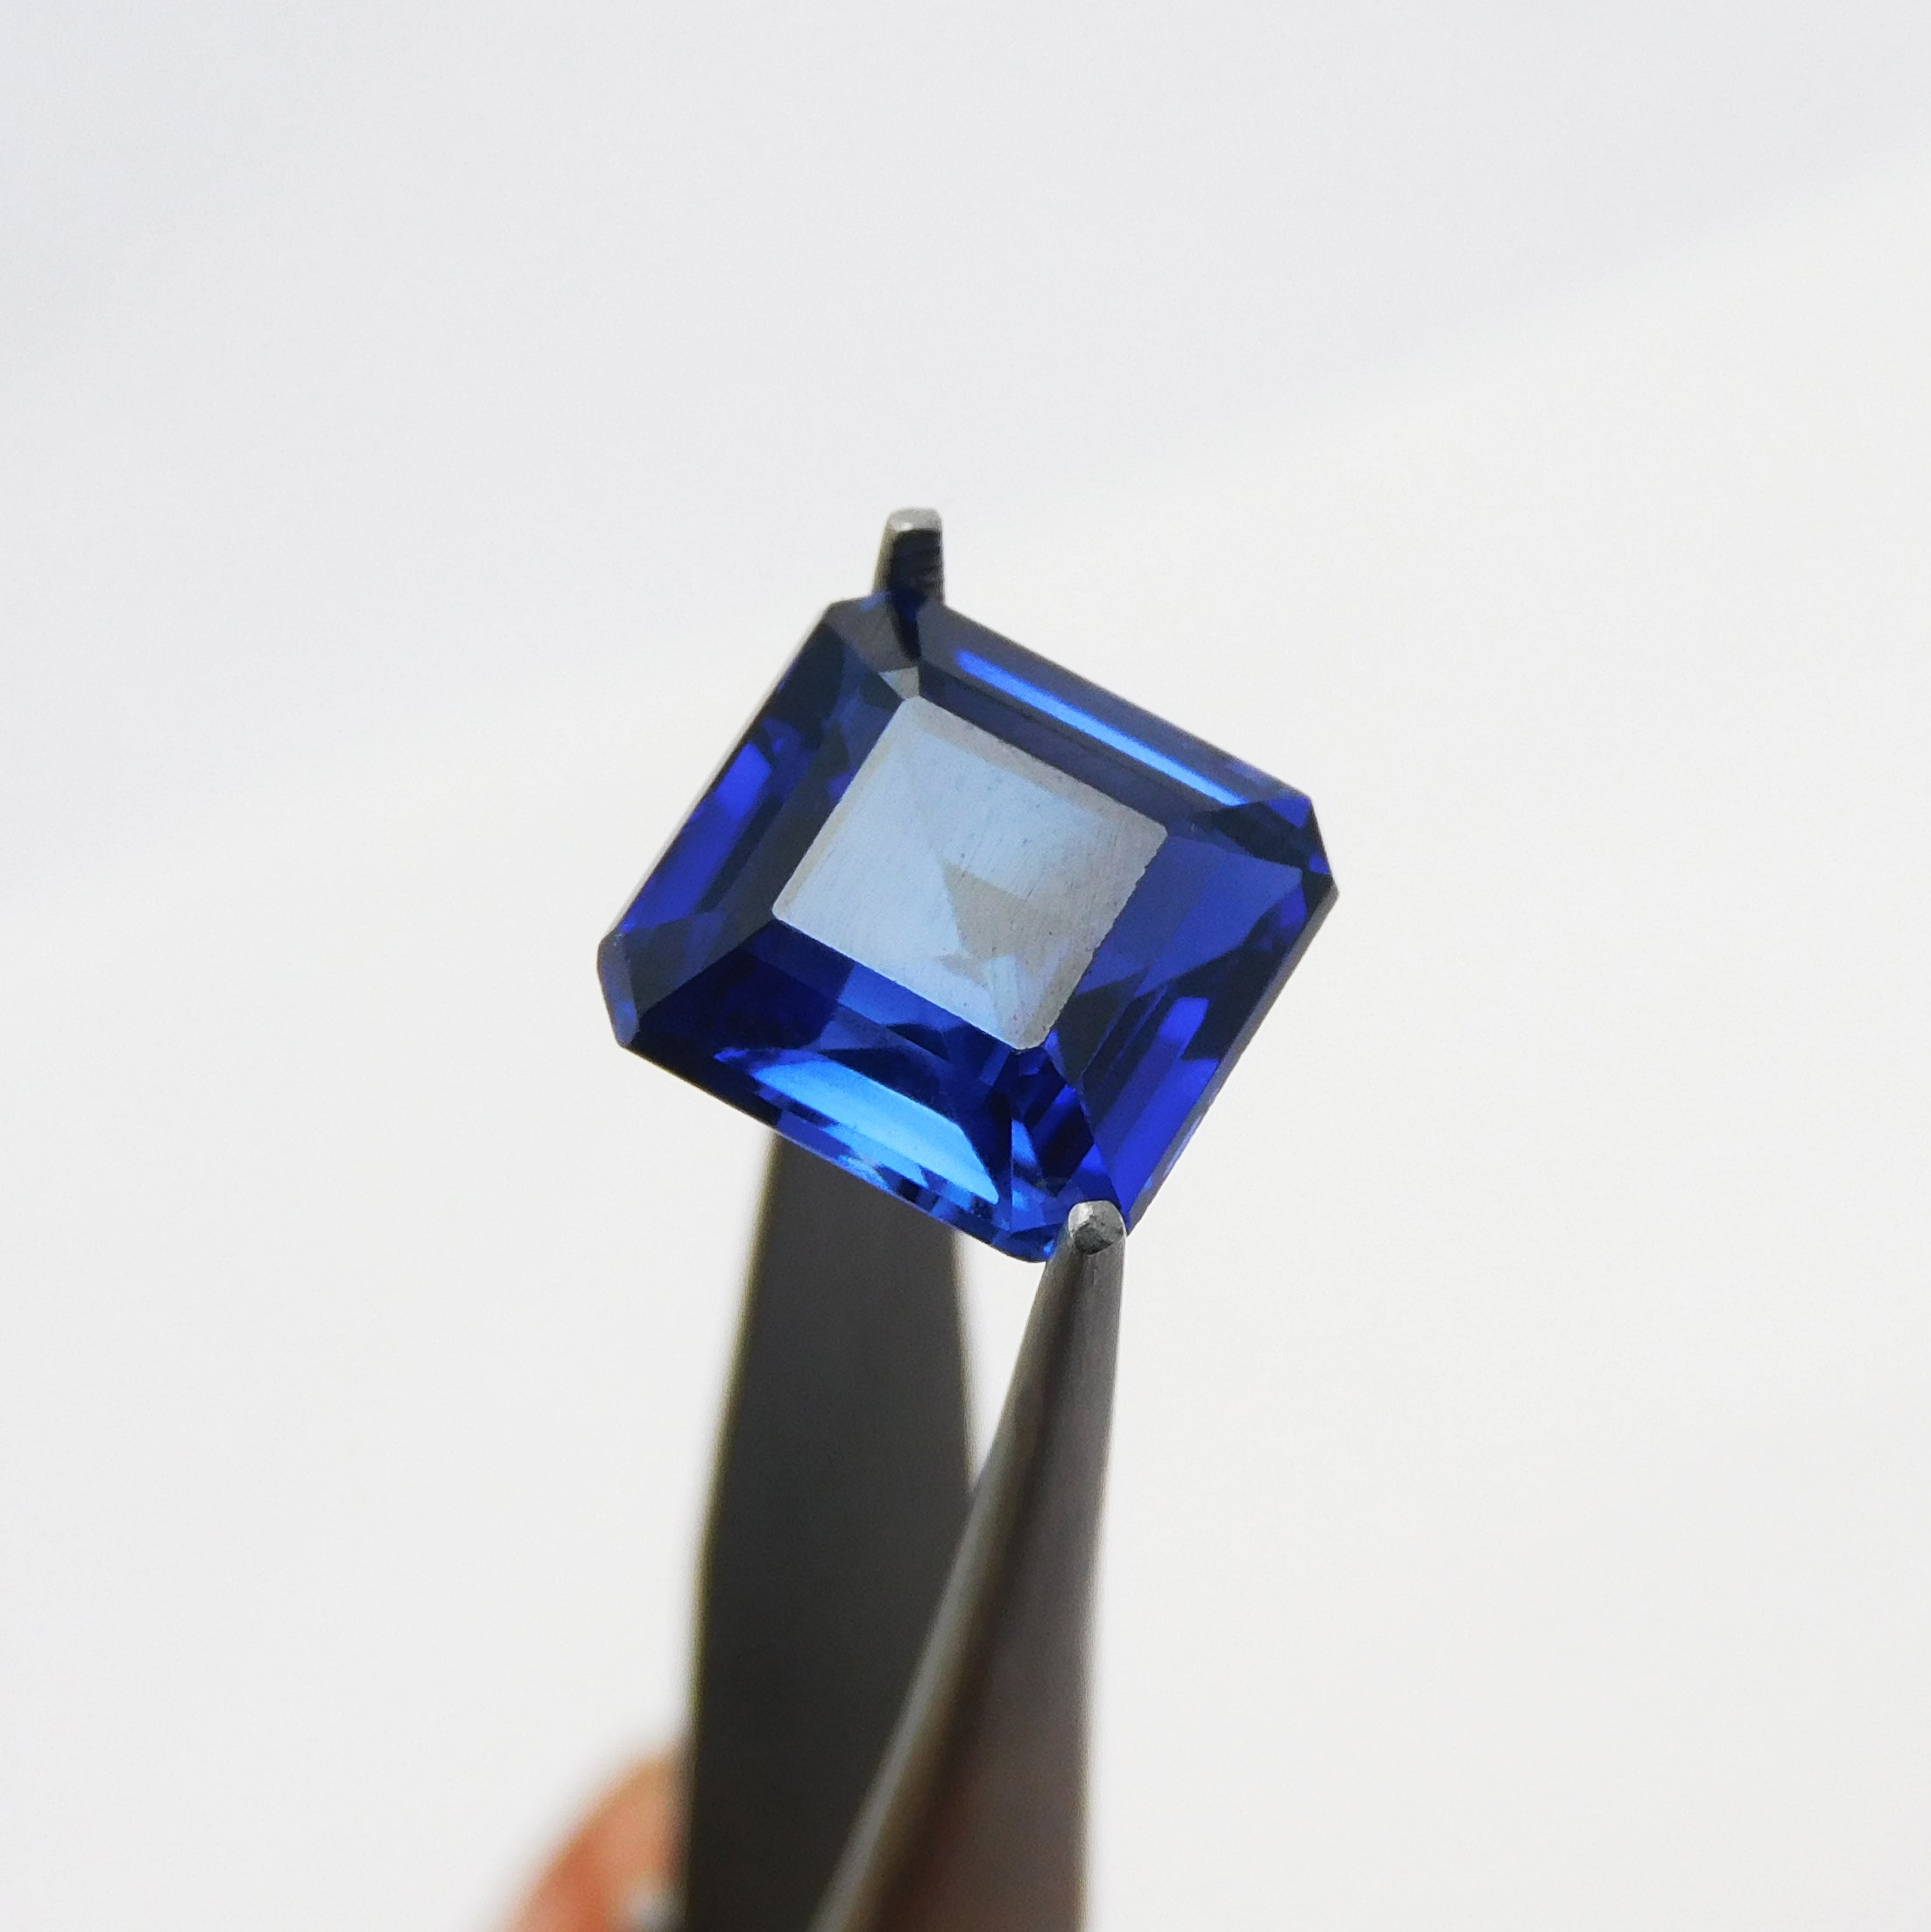 " Ring Size " Glorious Certified Natural Loose Gemstone 7.84 Carat Mini Dark Blue Tanzanite | Best Price On Tanzanite |